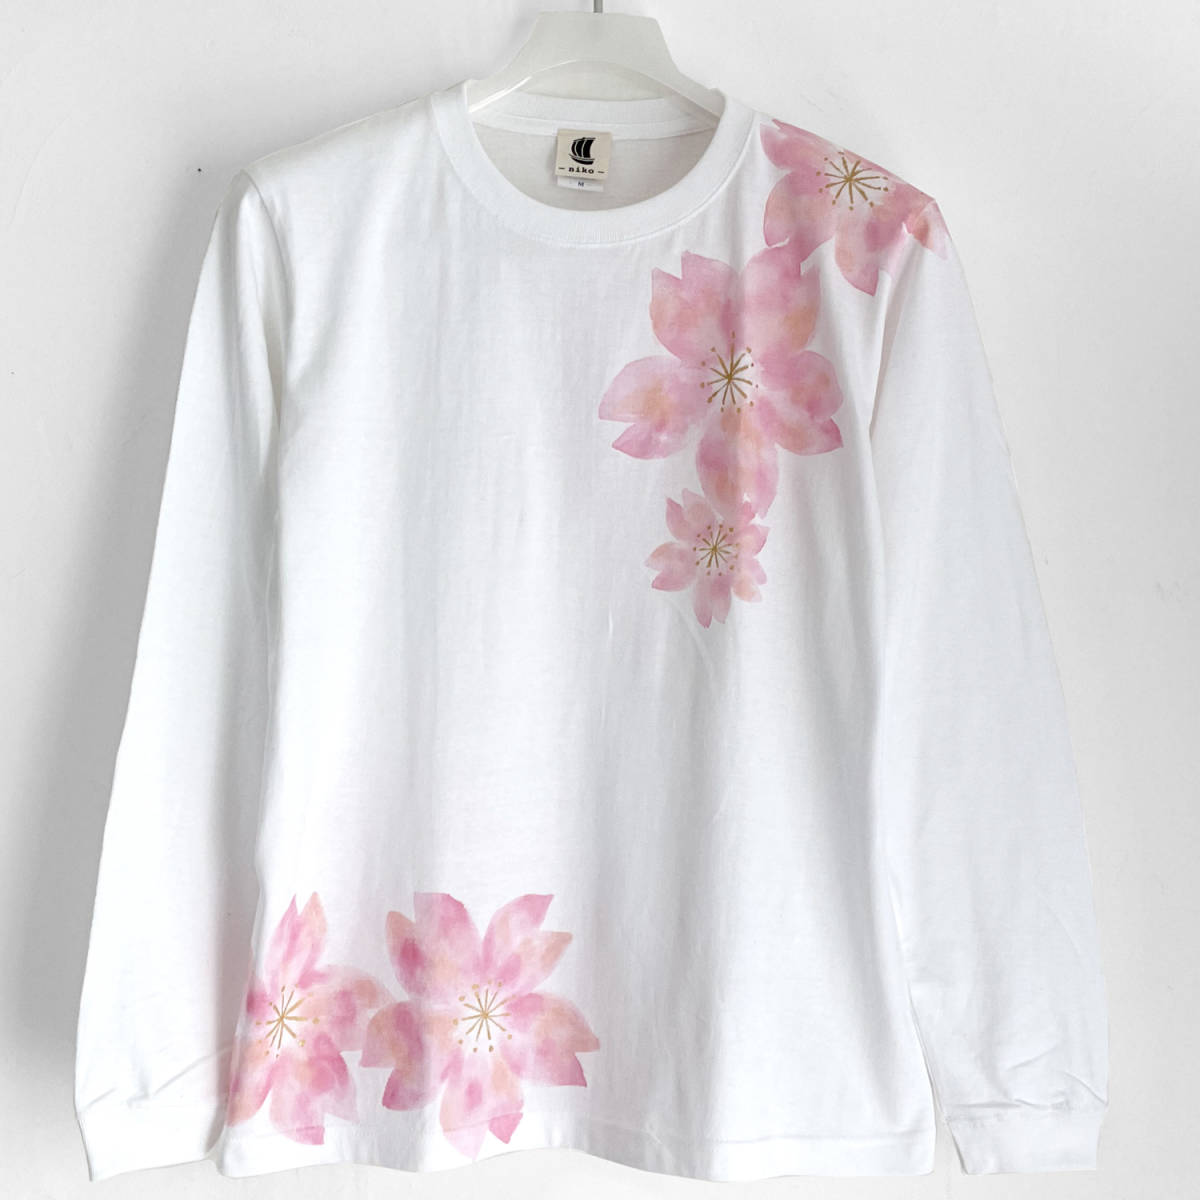 T-shirt motif Sakura, blanc, Taille S, t-shirt à manches longues peint à la main, manches côtelées, t-shirt long, motif floral, motif japonais, rose, T-shirt, manche longue, Taille S